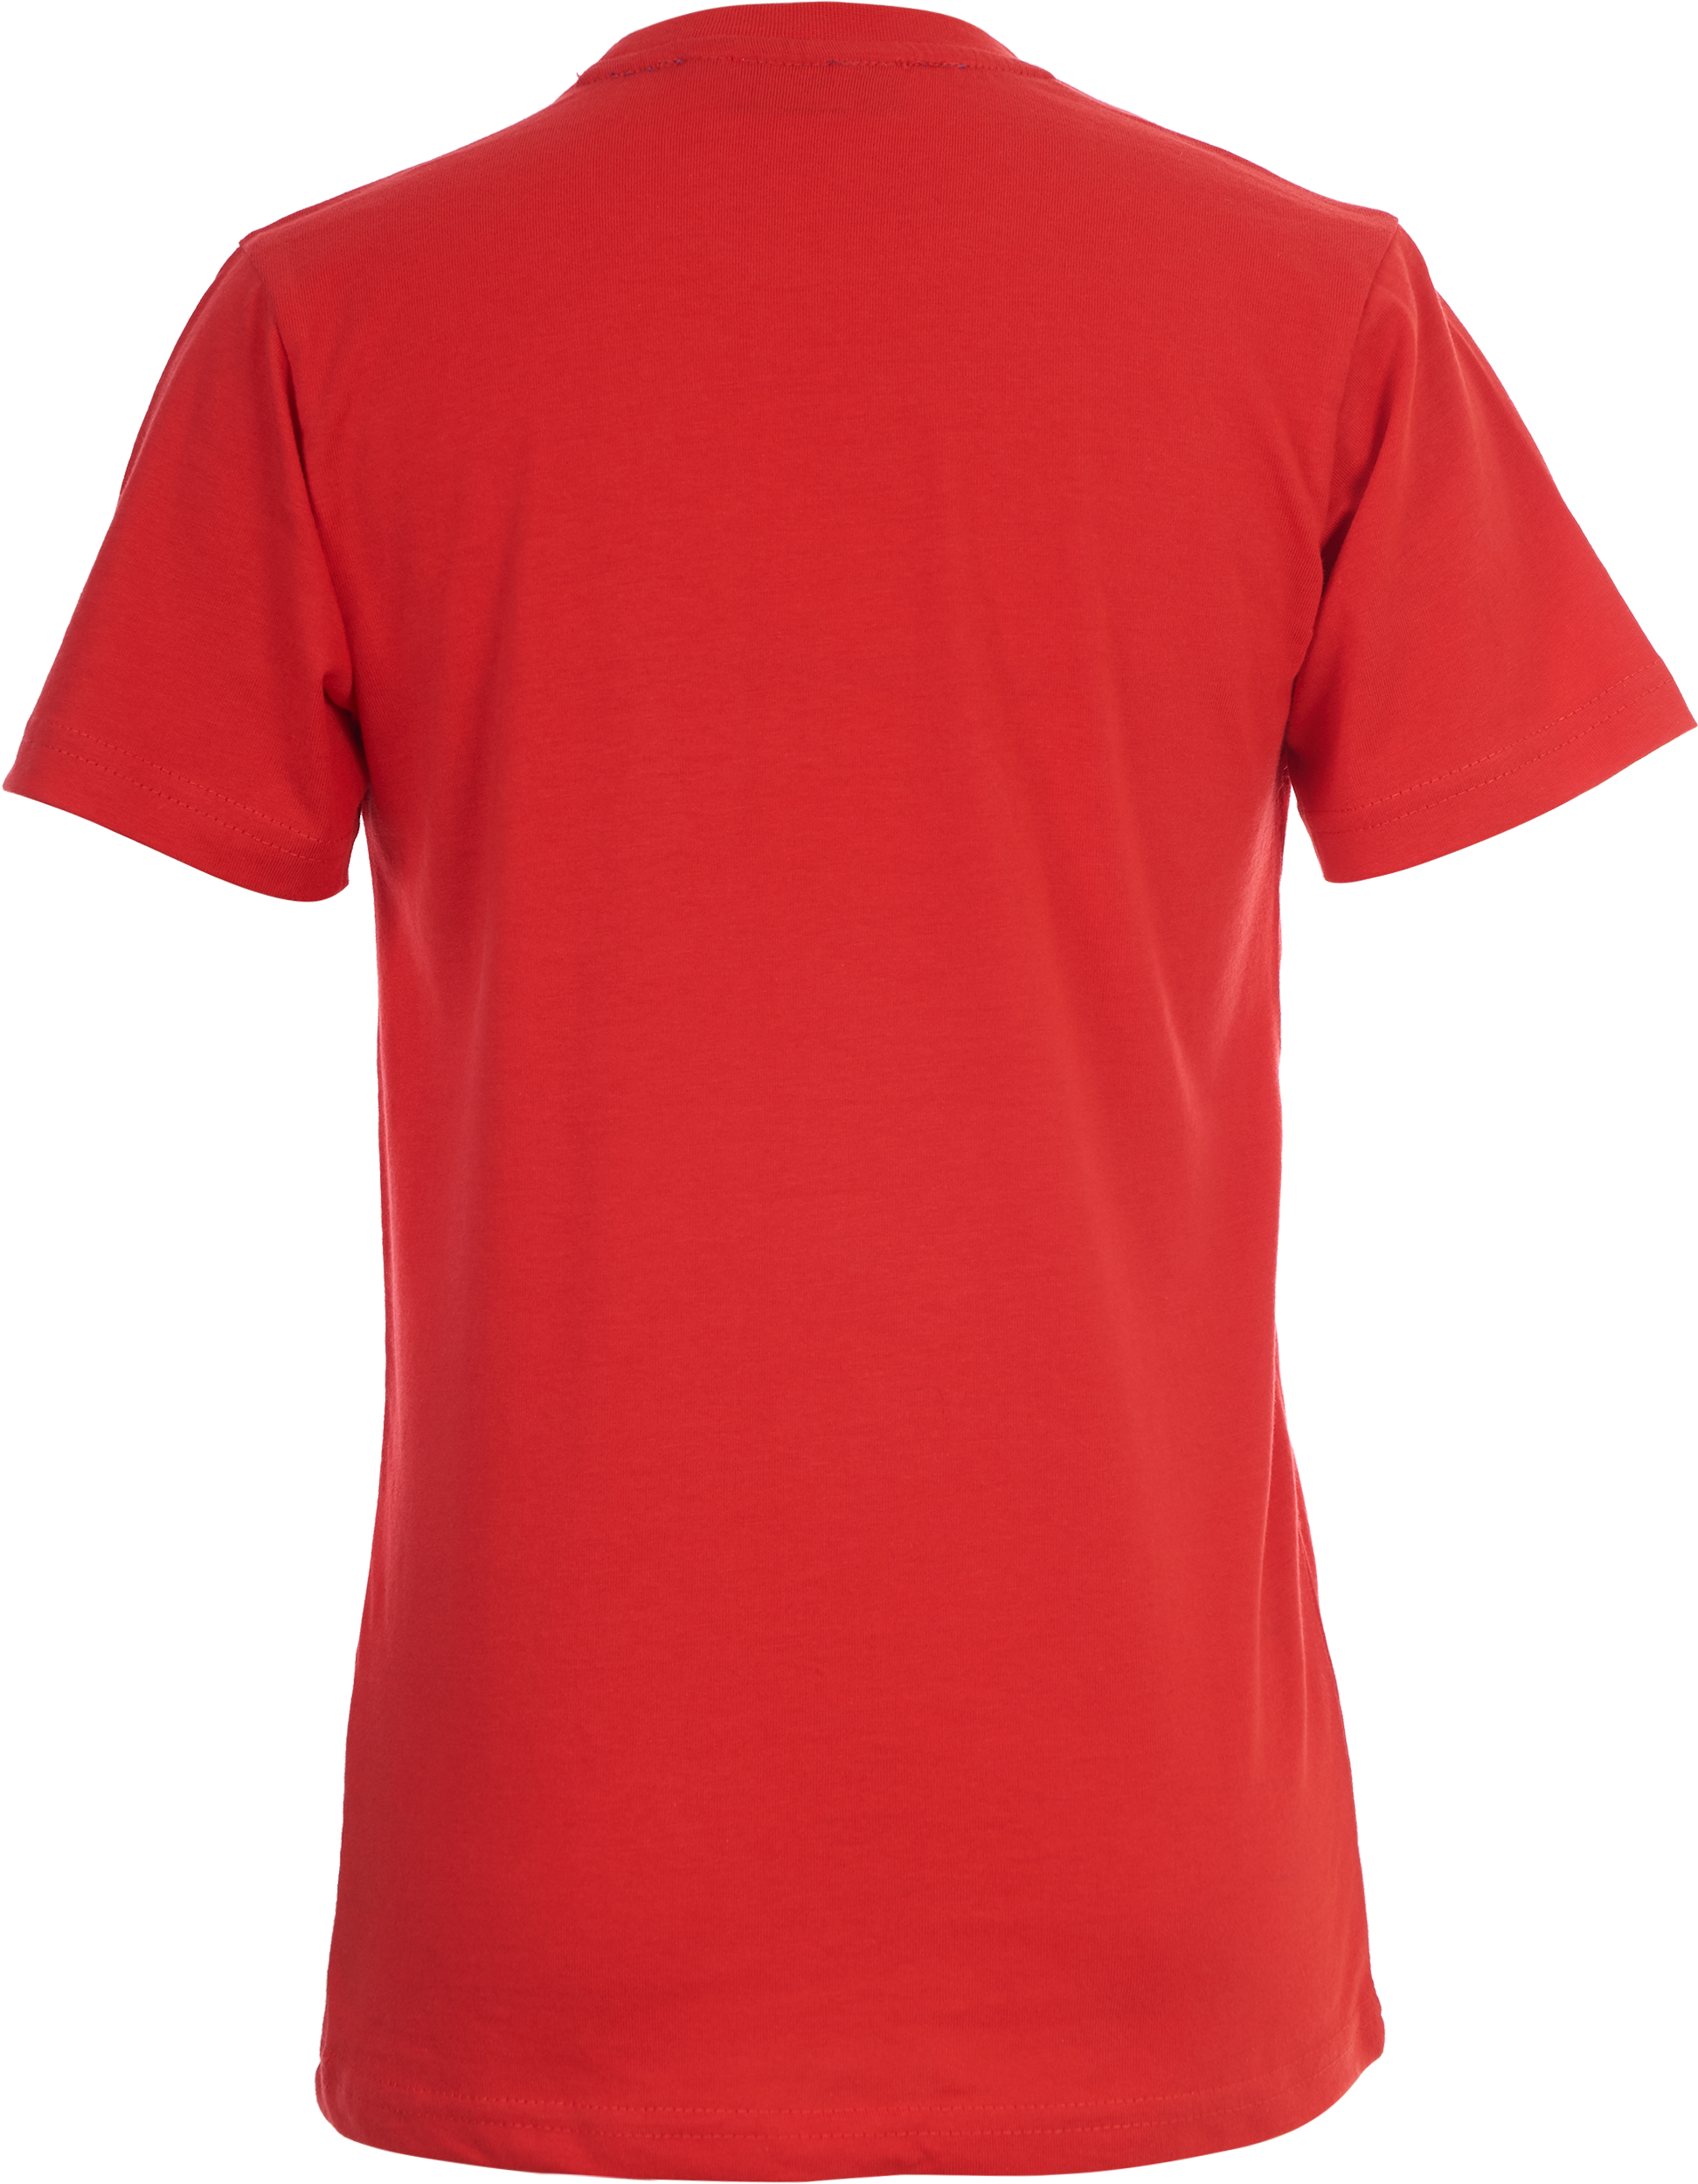 Jongens T-shirt Olifant van Someone in de kleur RED in maat 140.